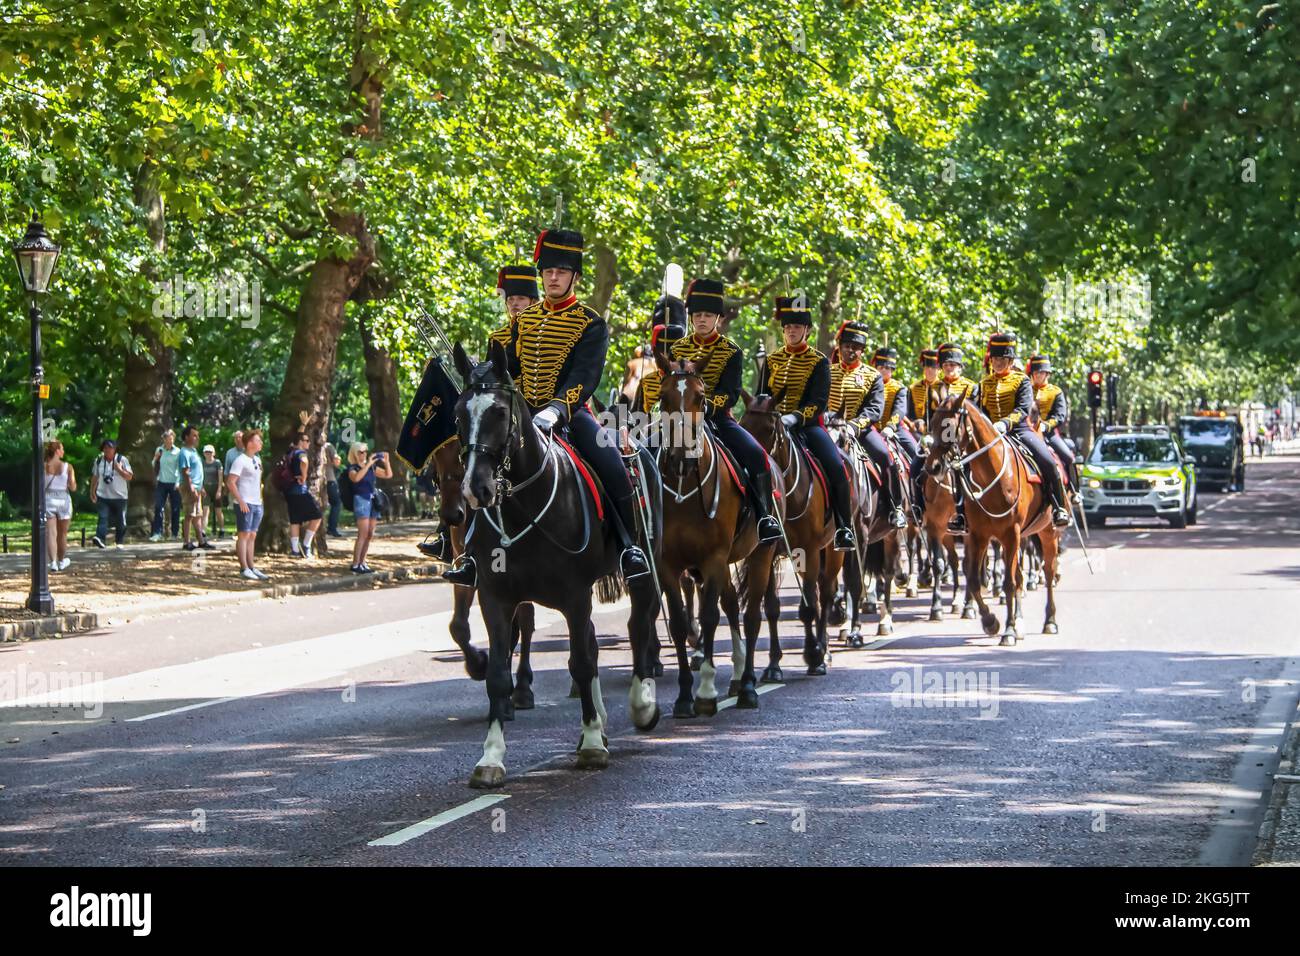 2019 07 24 Londra UK la Guardia di vita della Regina - cavalcando cavalli - uomini della Cavalleria Household montato Regiment cavalcando giù strada vicino a St James Park con p Foto Stock